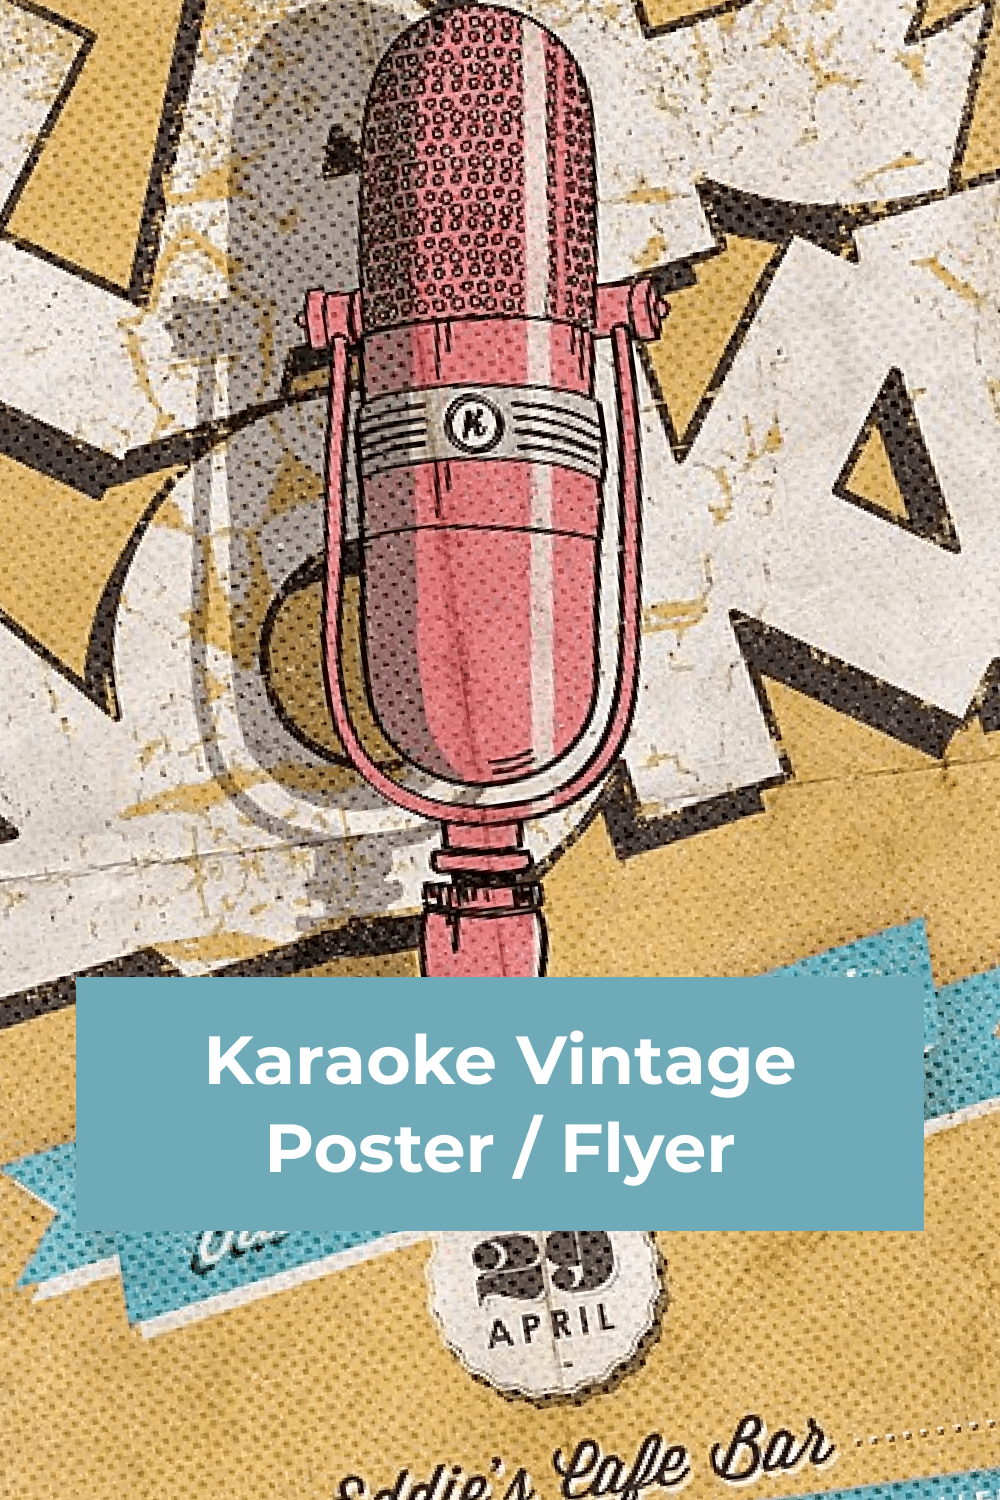 Karaoke Vintage Poster Flyer pinterest image.